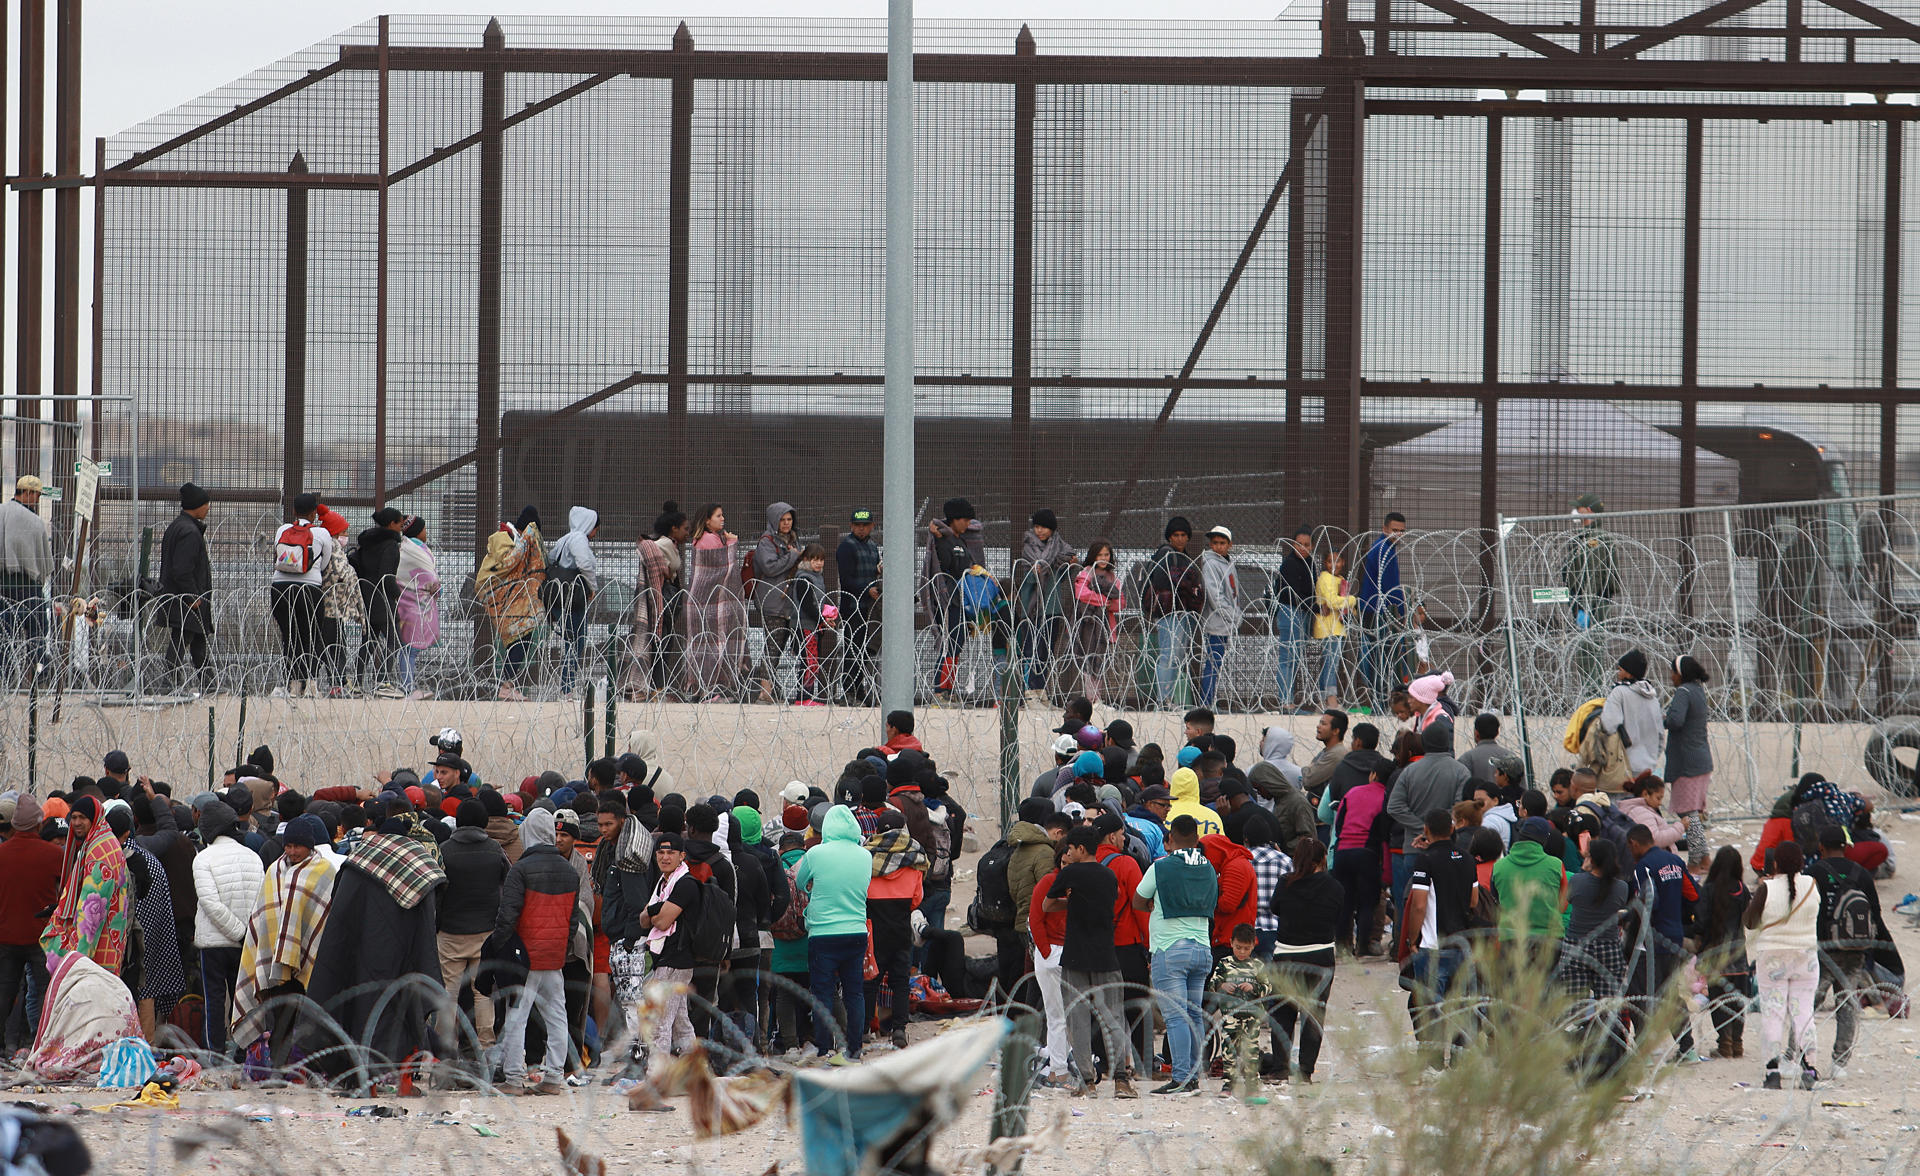 Migrantes hacen fila en el muro fronterizo para intentar cruzar hacia EEUU, en ciudad Juárez Chihuahua (México). Imagen de archivo. EFE/Luis Torres